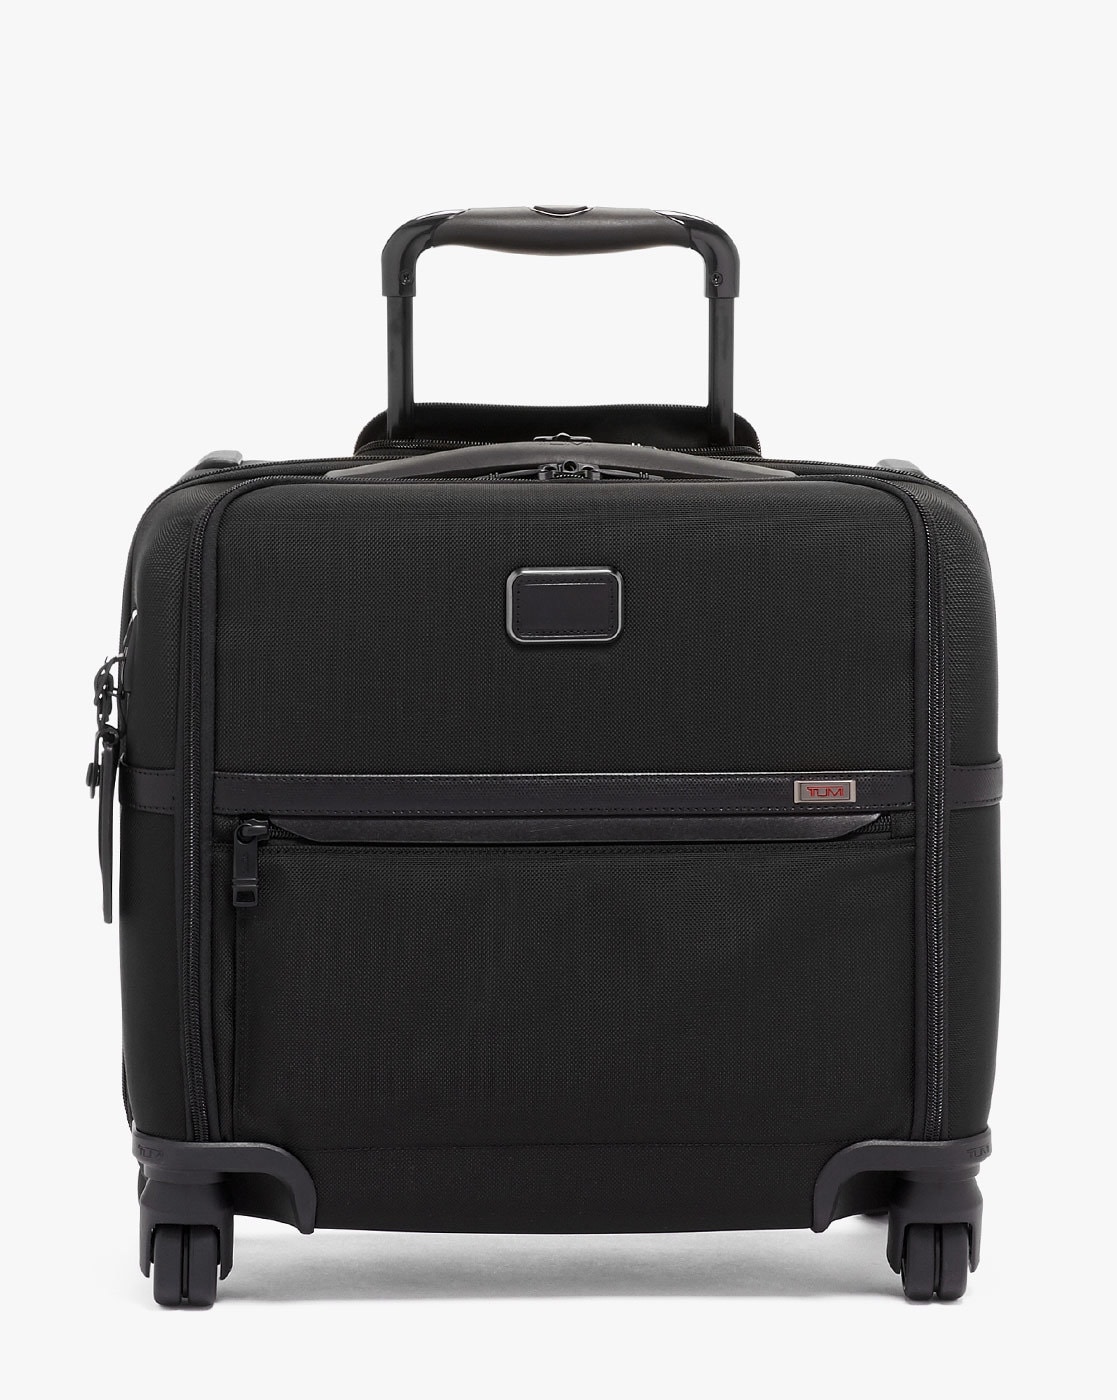 TUMI Voyageur Celina Backpack Black/Gunmetal 146566-T522 - Best Buy